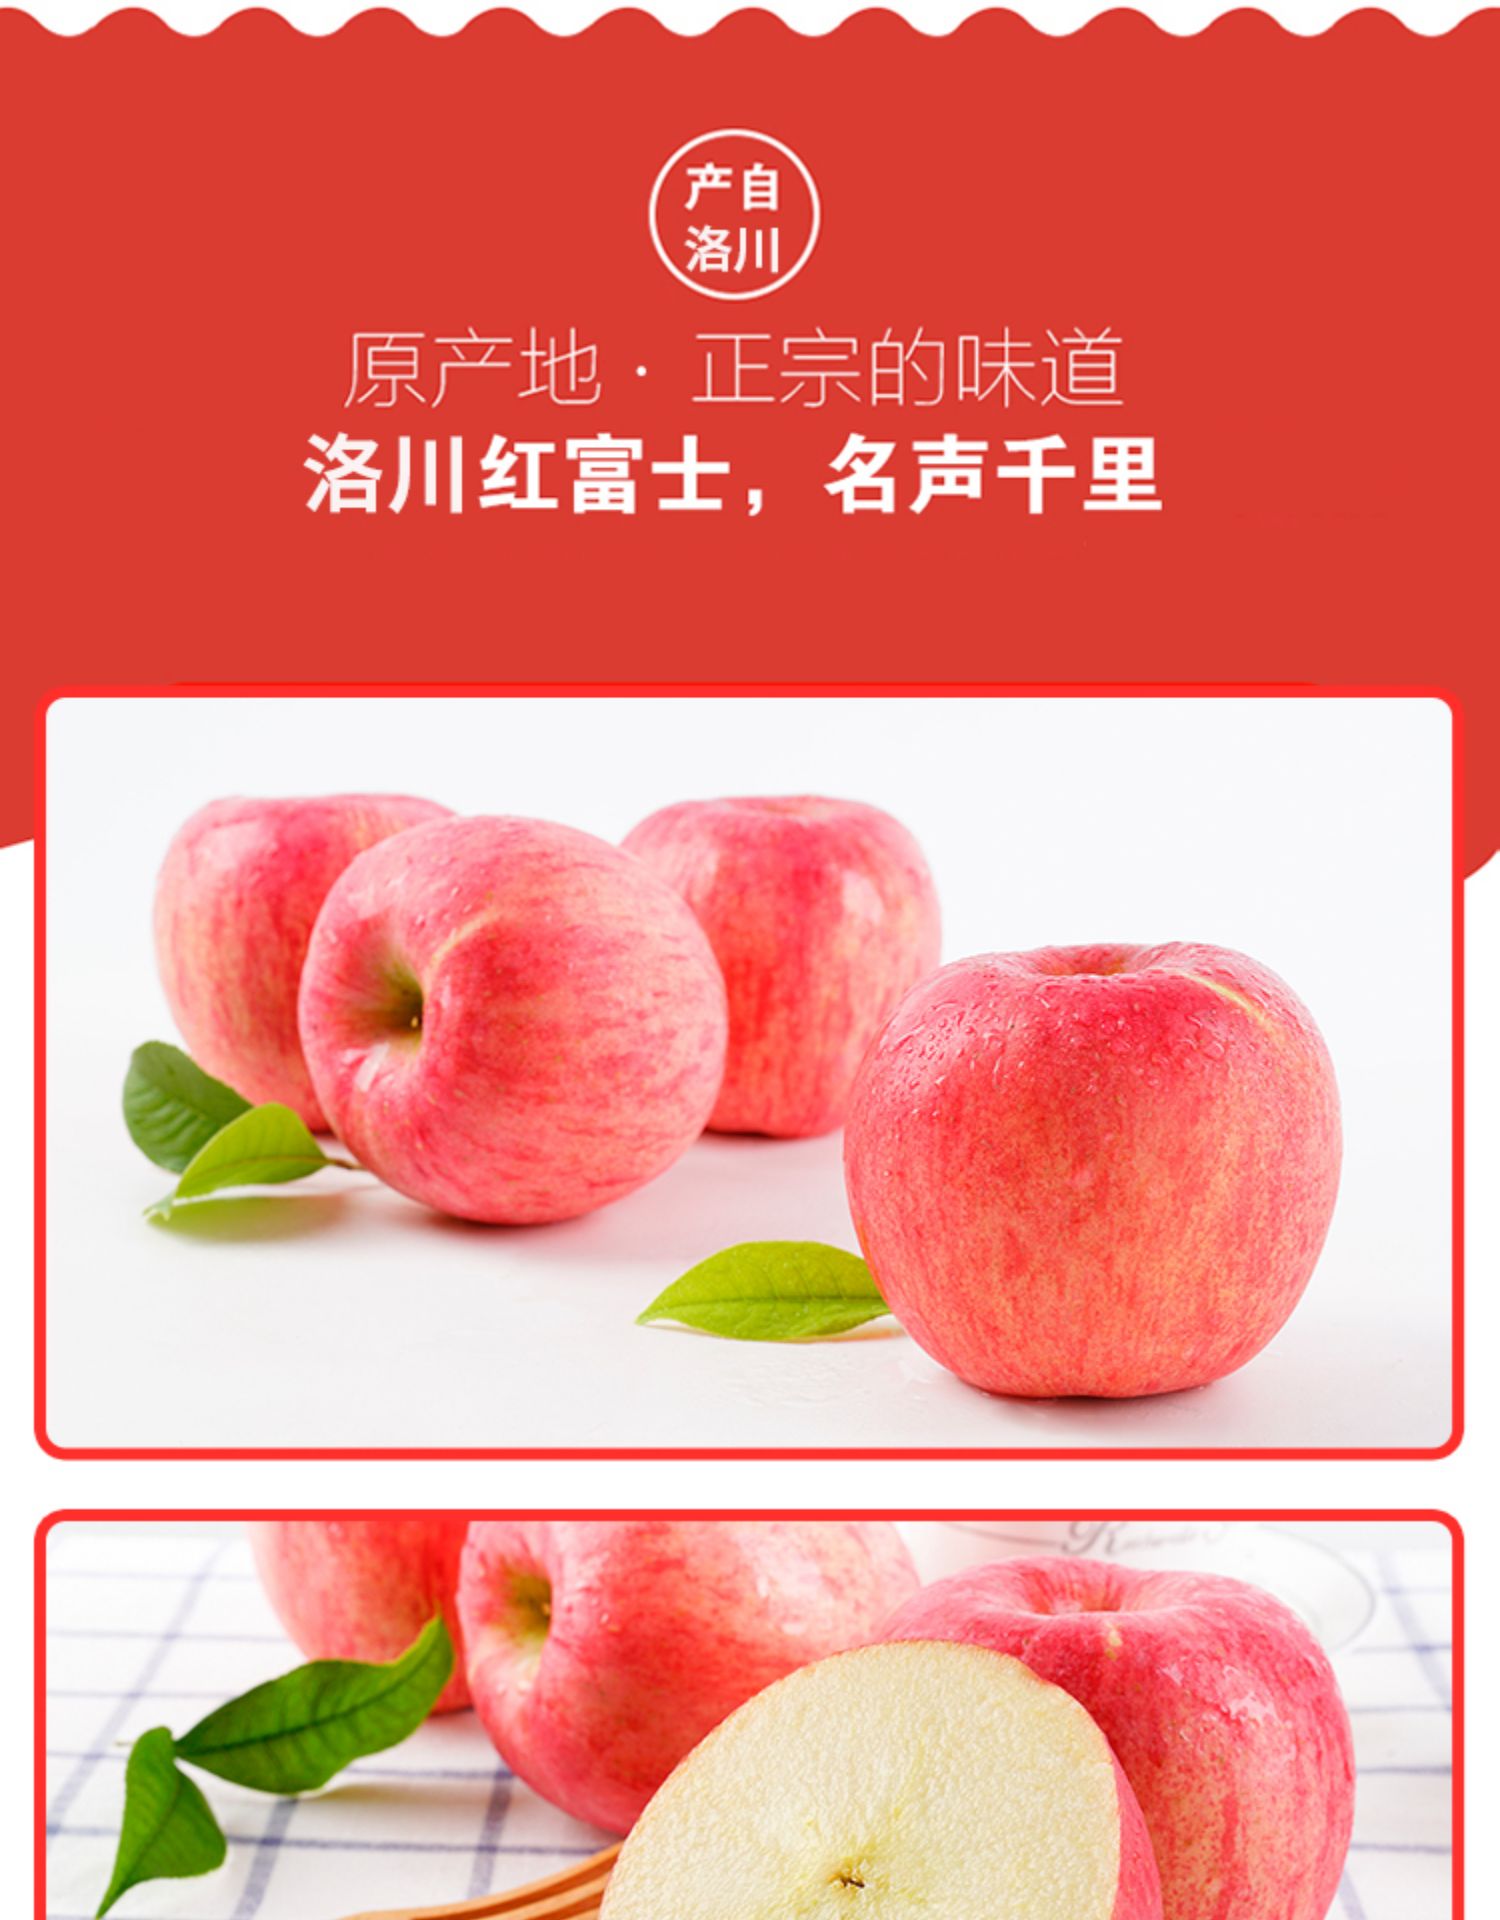 洛川苹果红富士陕西惠达10斤整箱